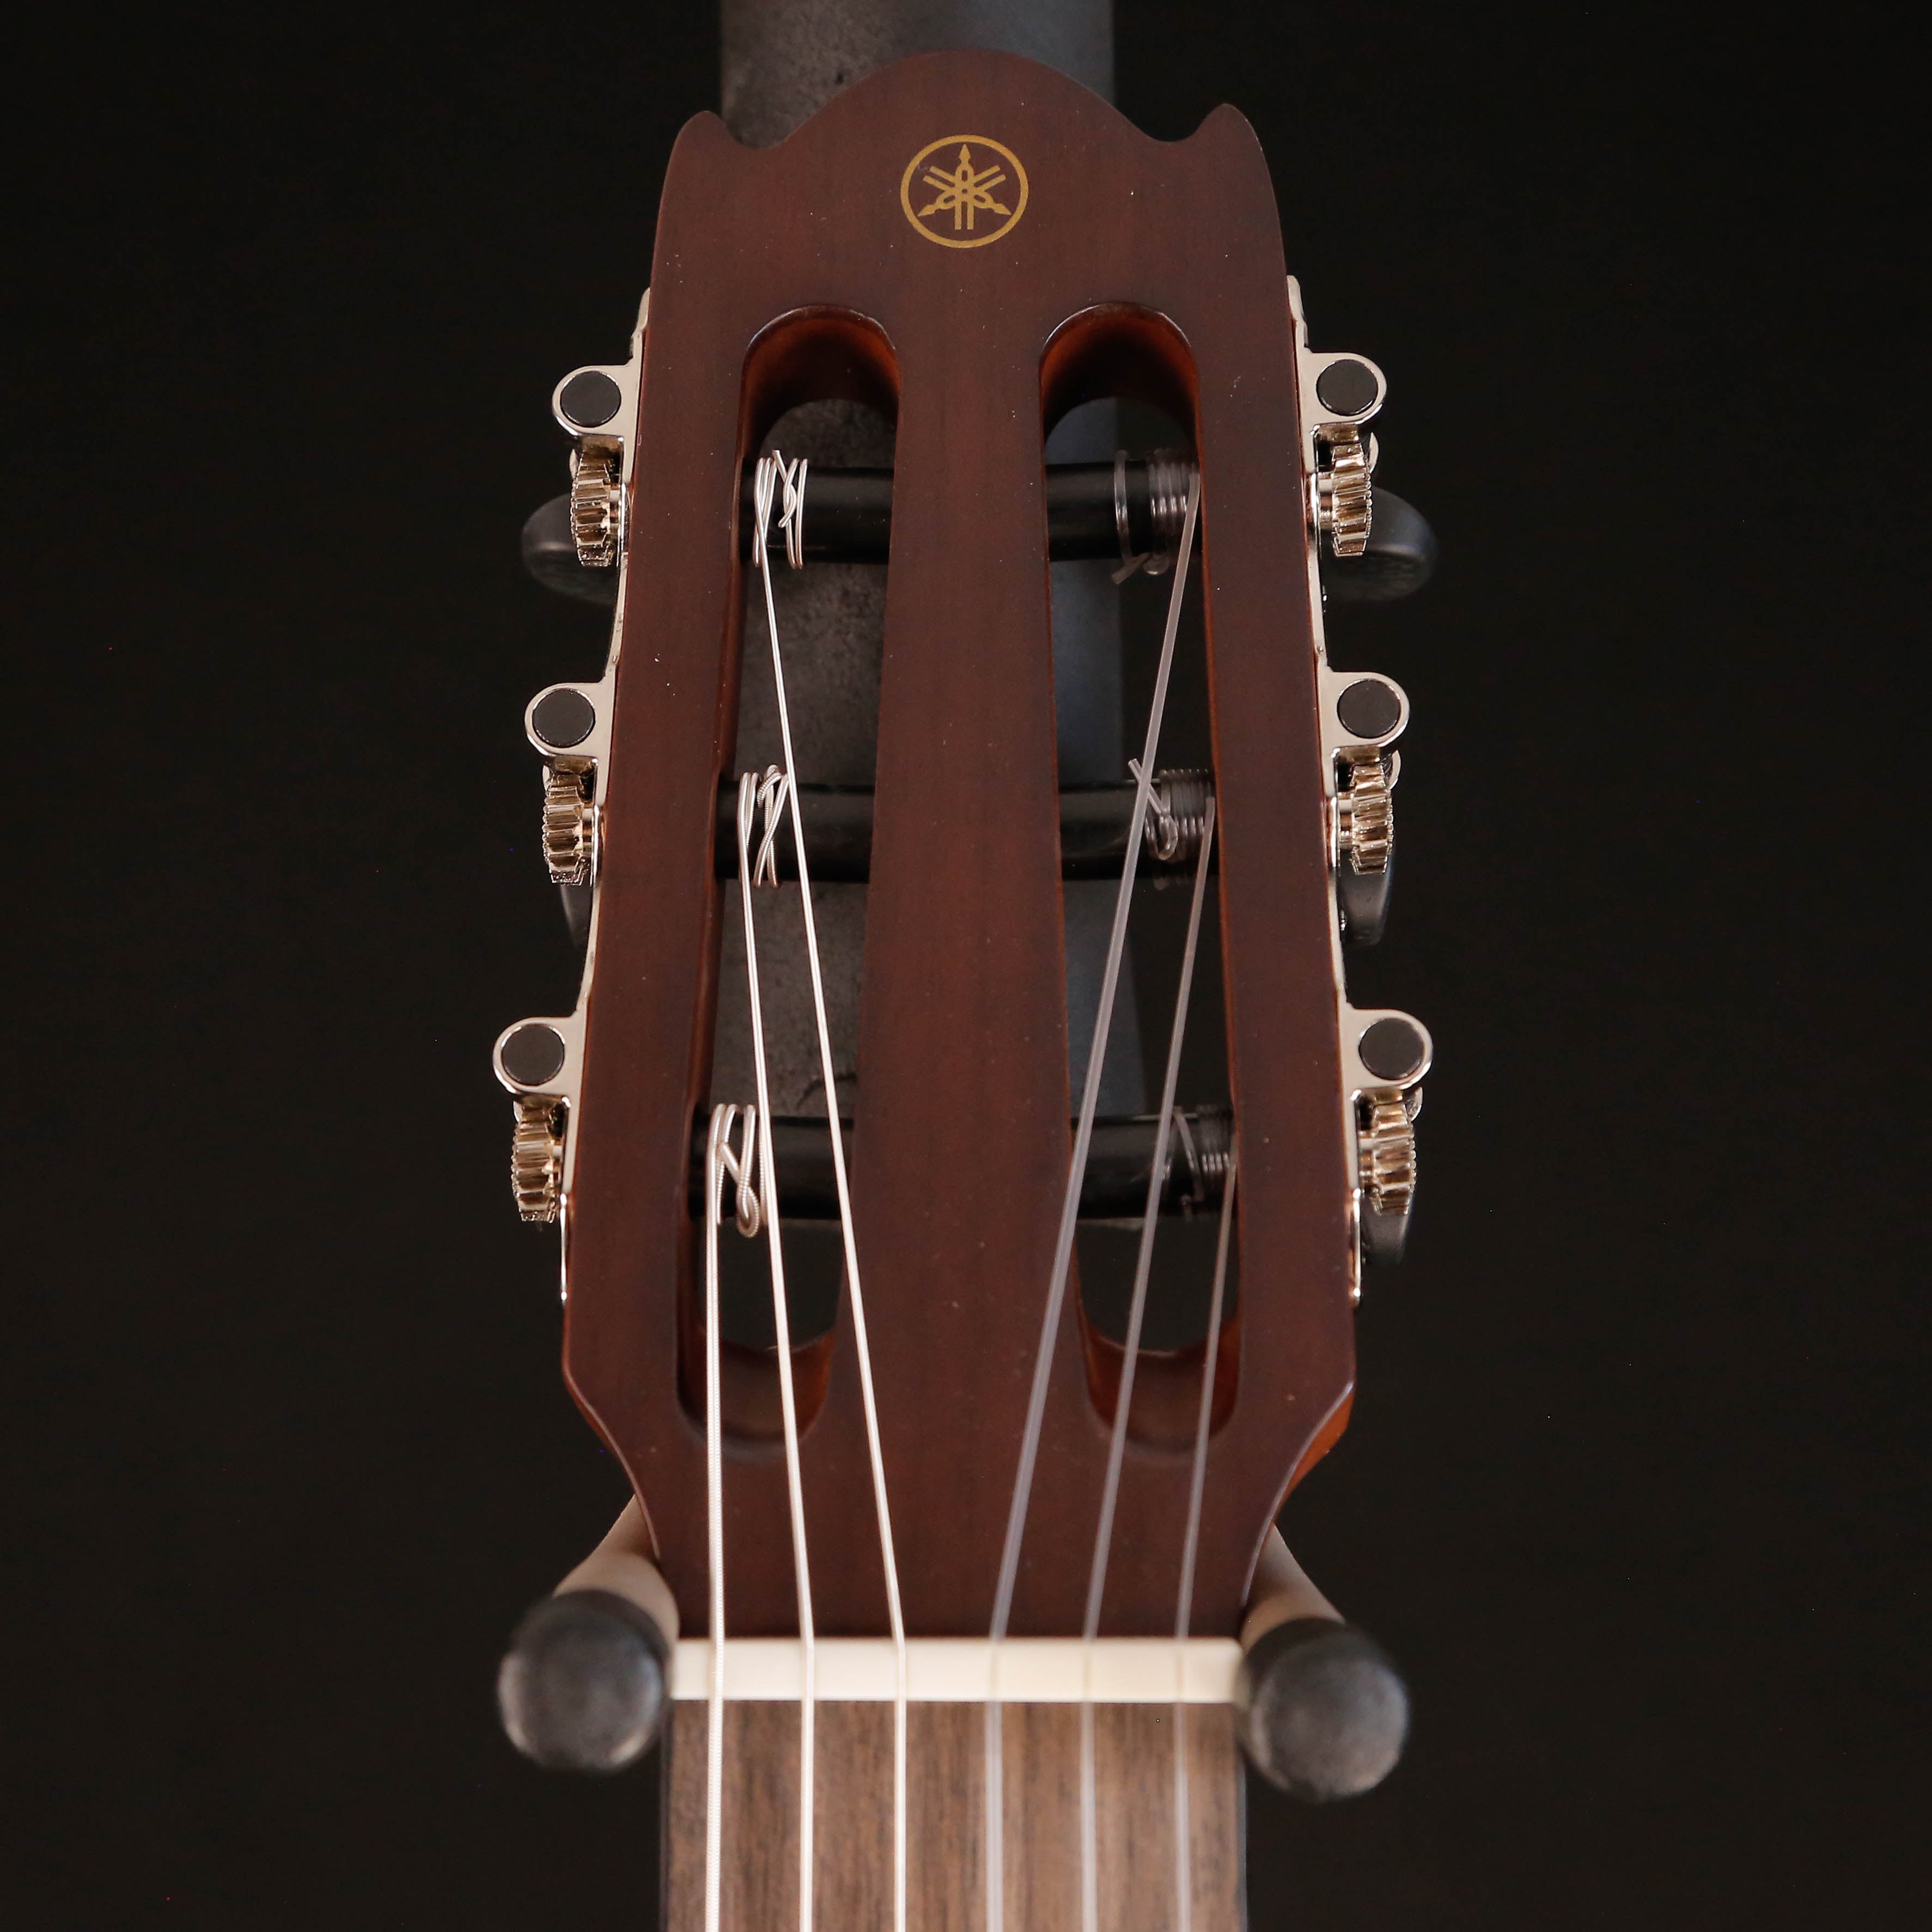 Yamaha NCX1C Acoustic/Electric Nylon String Guitar